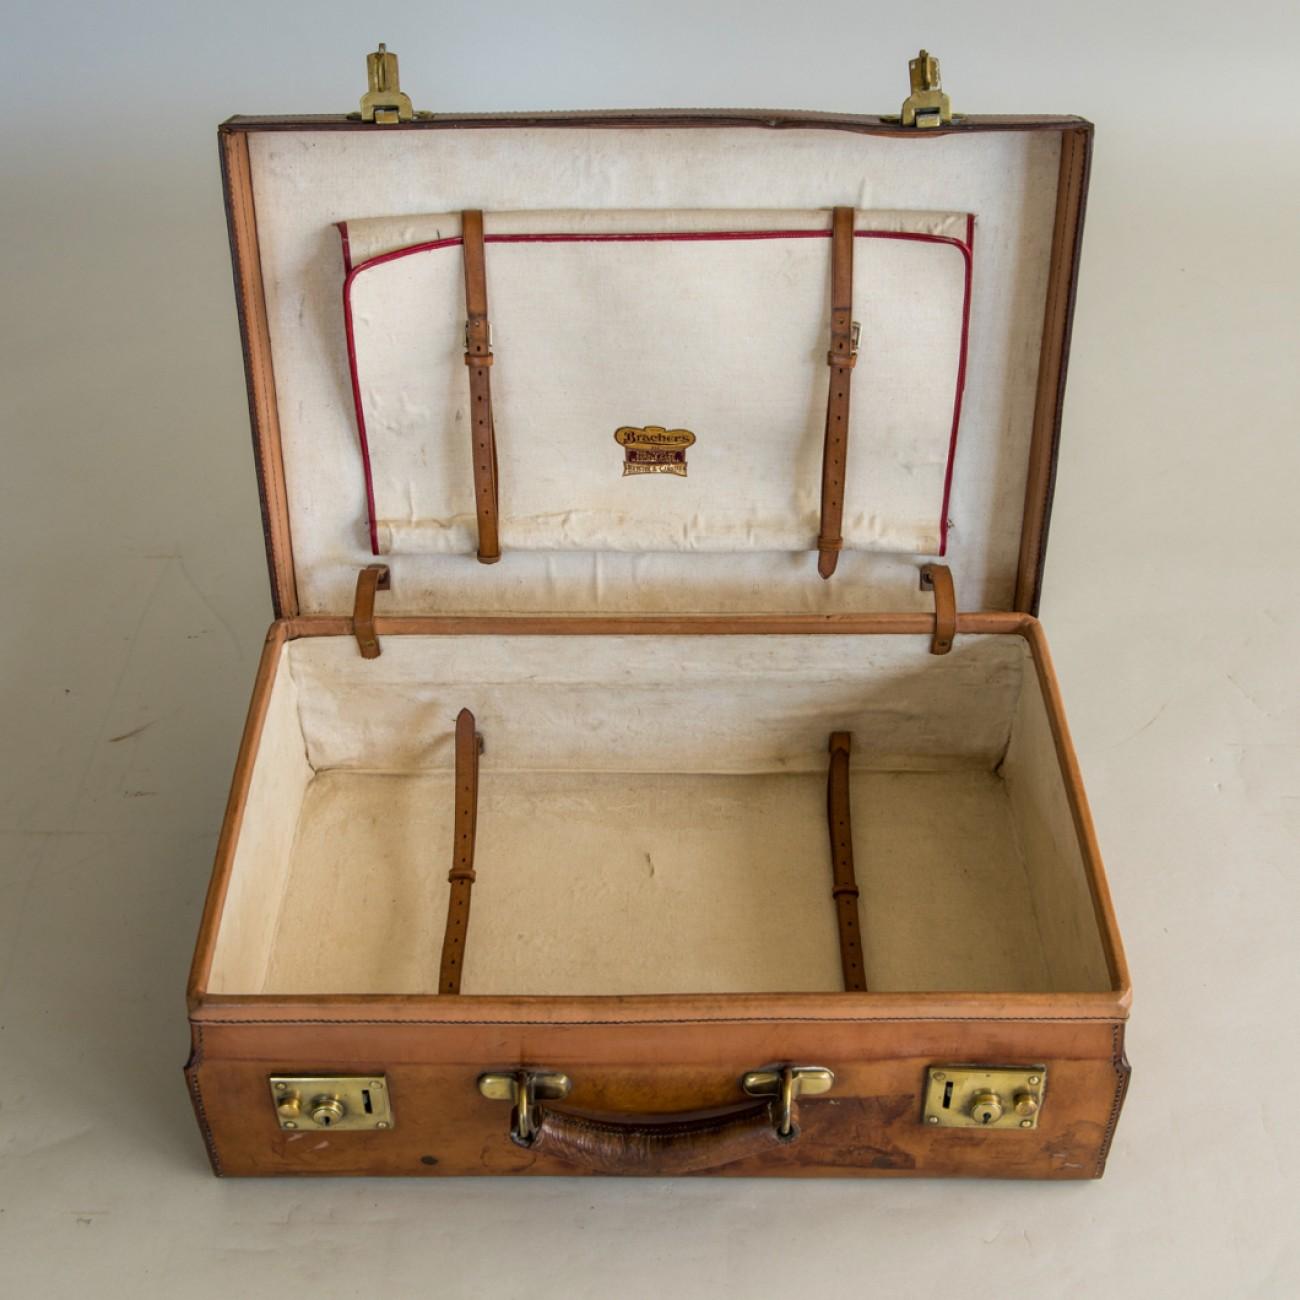 British Tan Leather Suitcase, circa 1900.